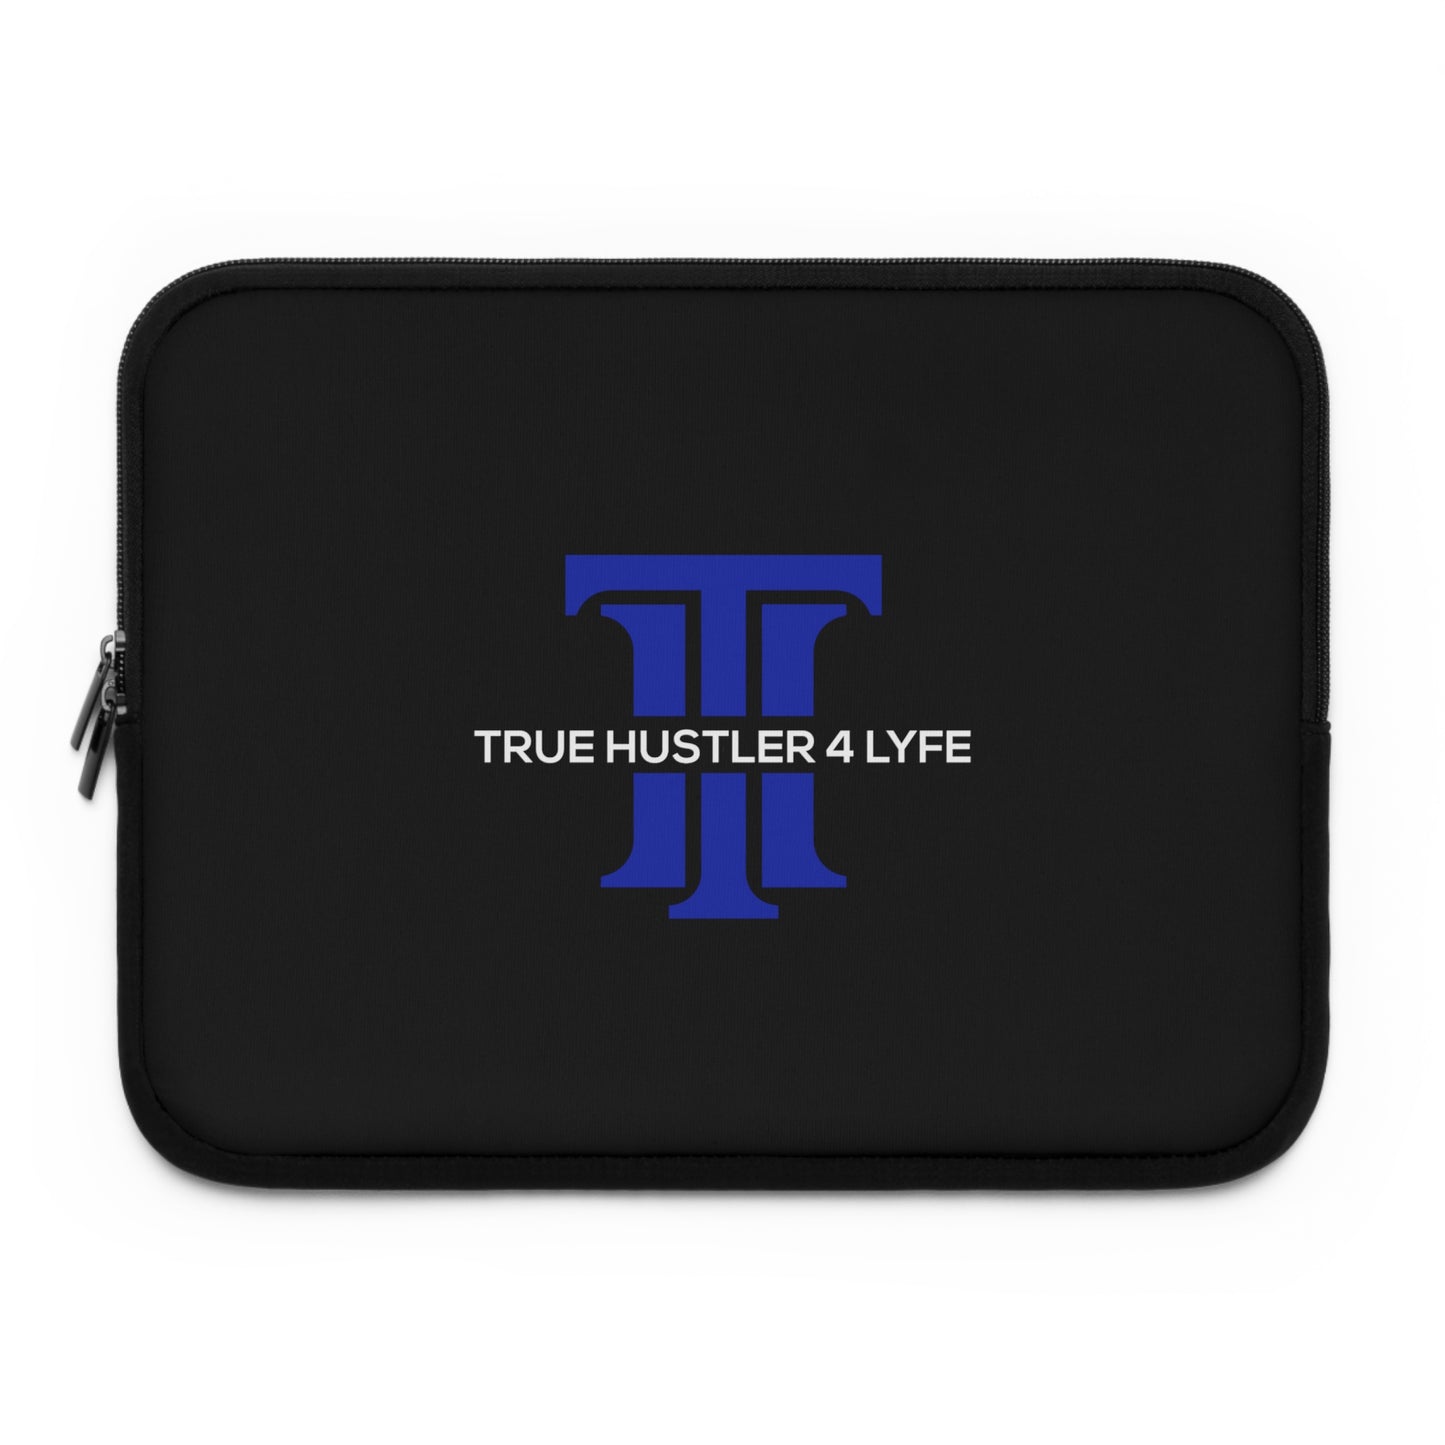 True Hustler 4 Lyfe Laptop Sleeve